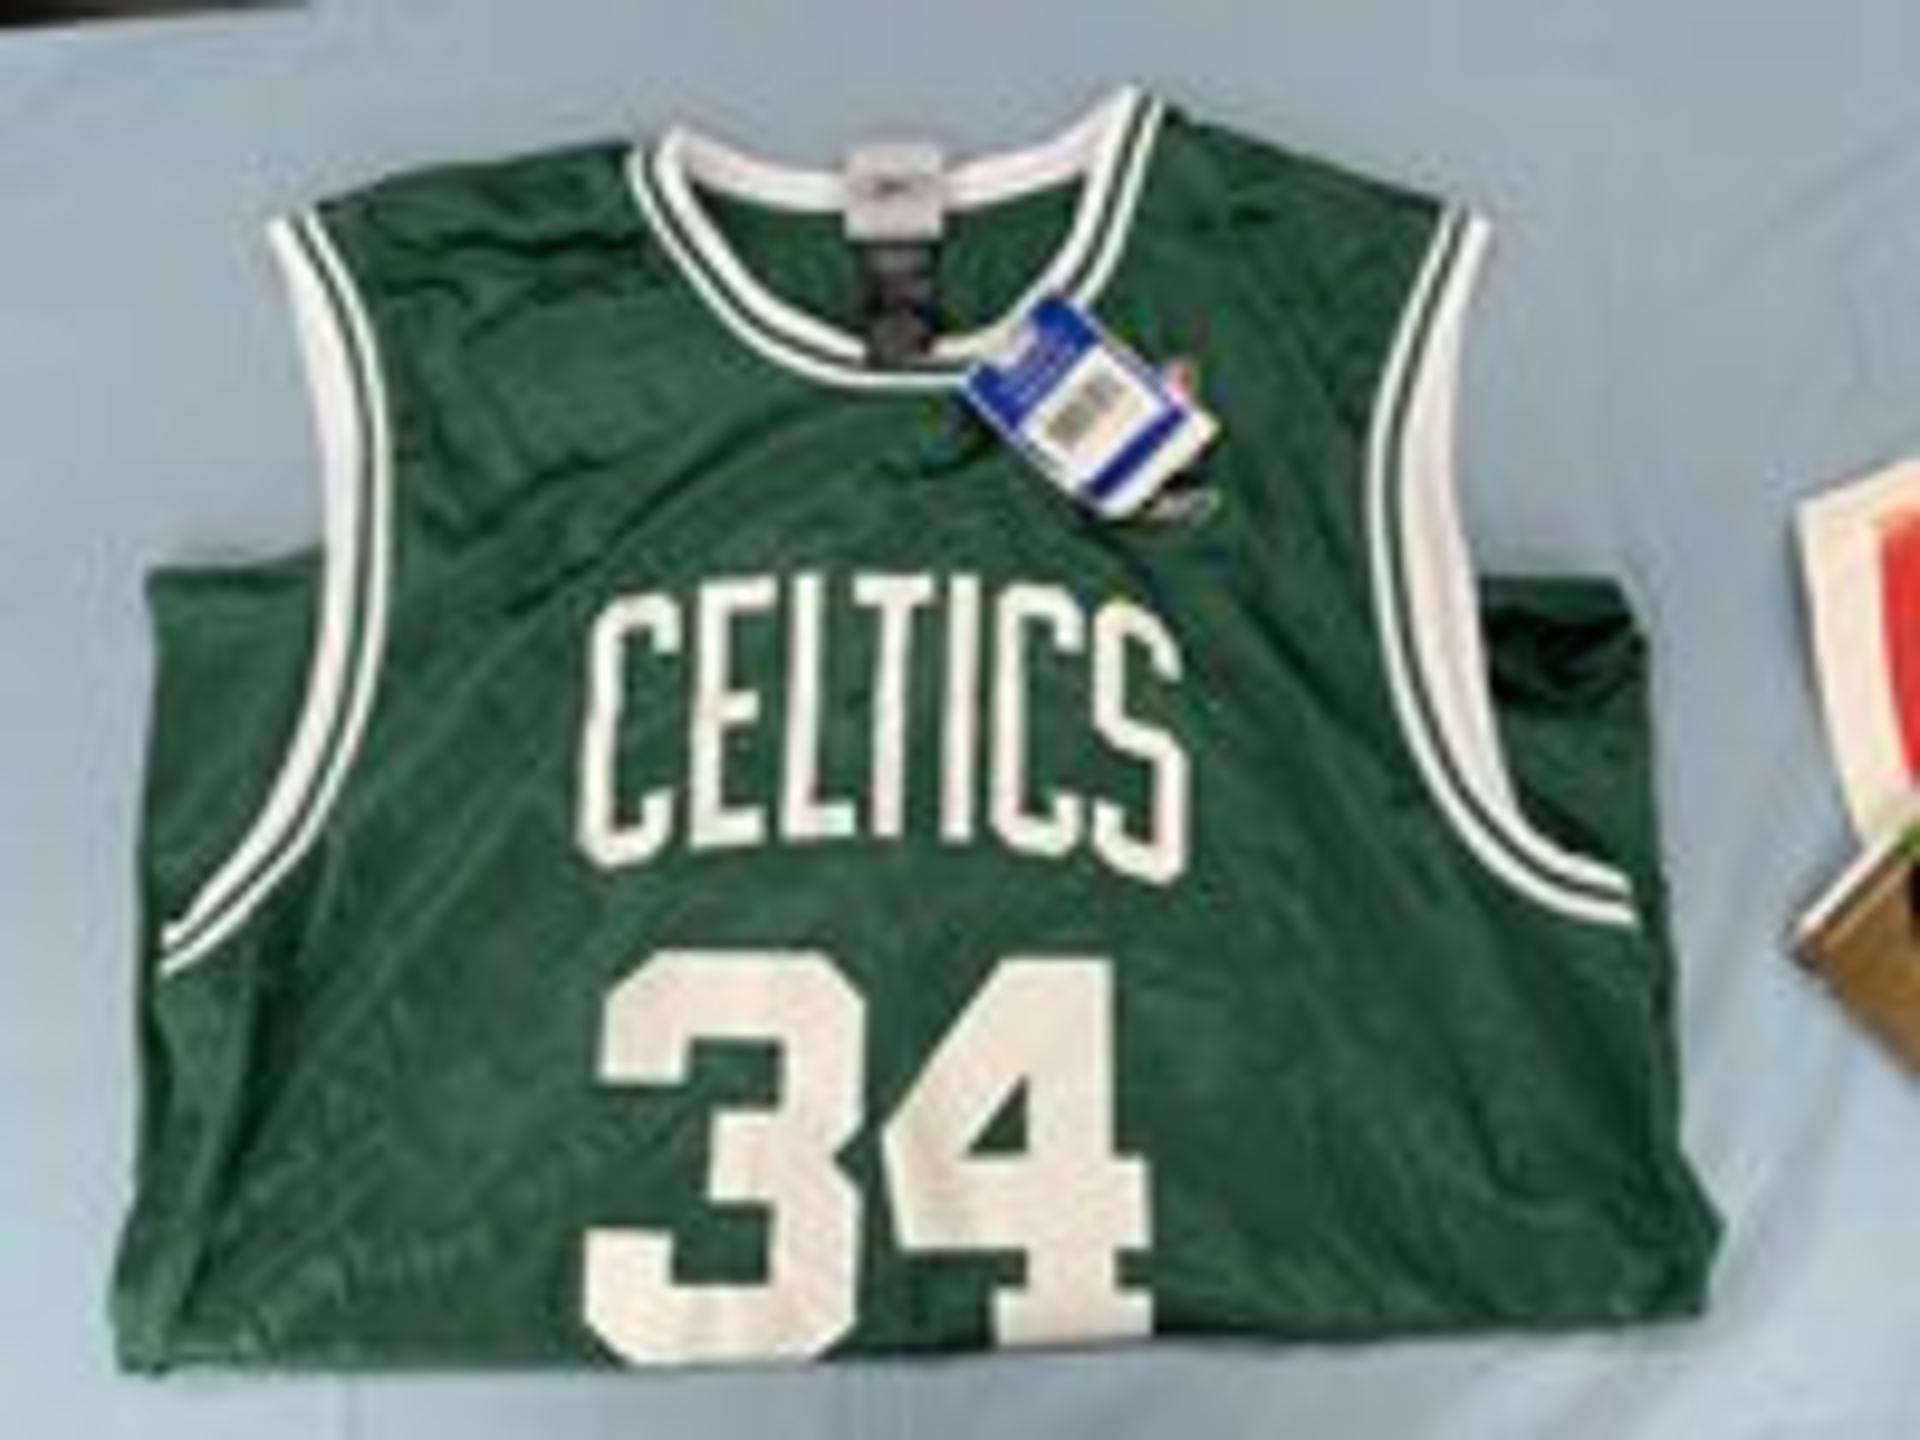 (Lot) Celtics c/o: Paul Peirce XL Rebook Replica Jersey NWT, 2008 Finals commemorative Program, 2008 - Image 2 of 3